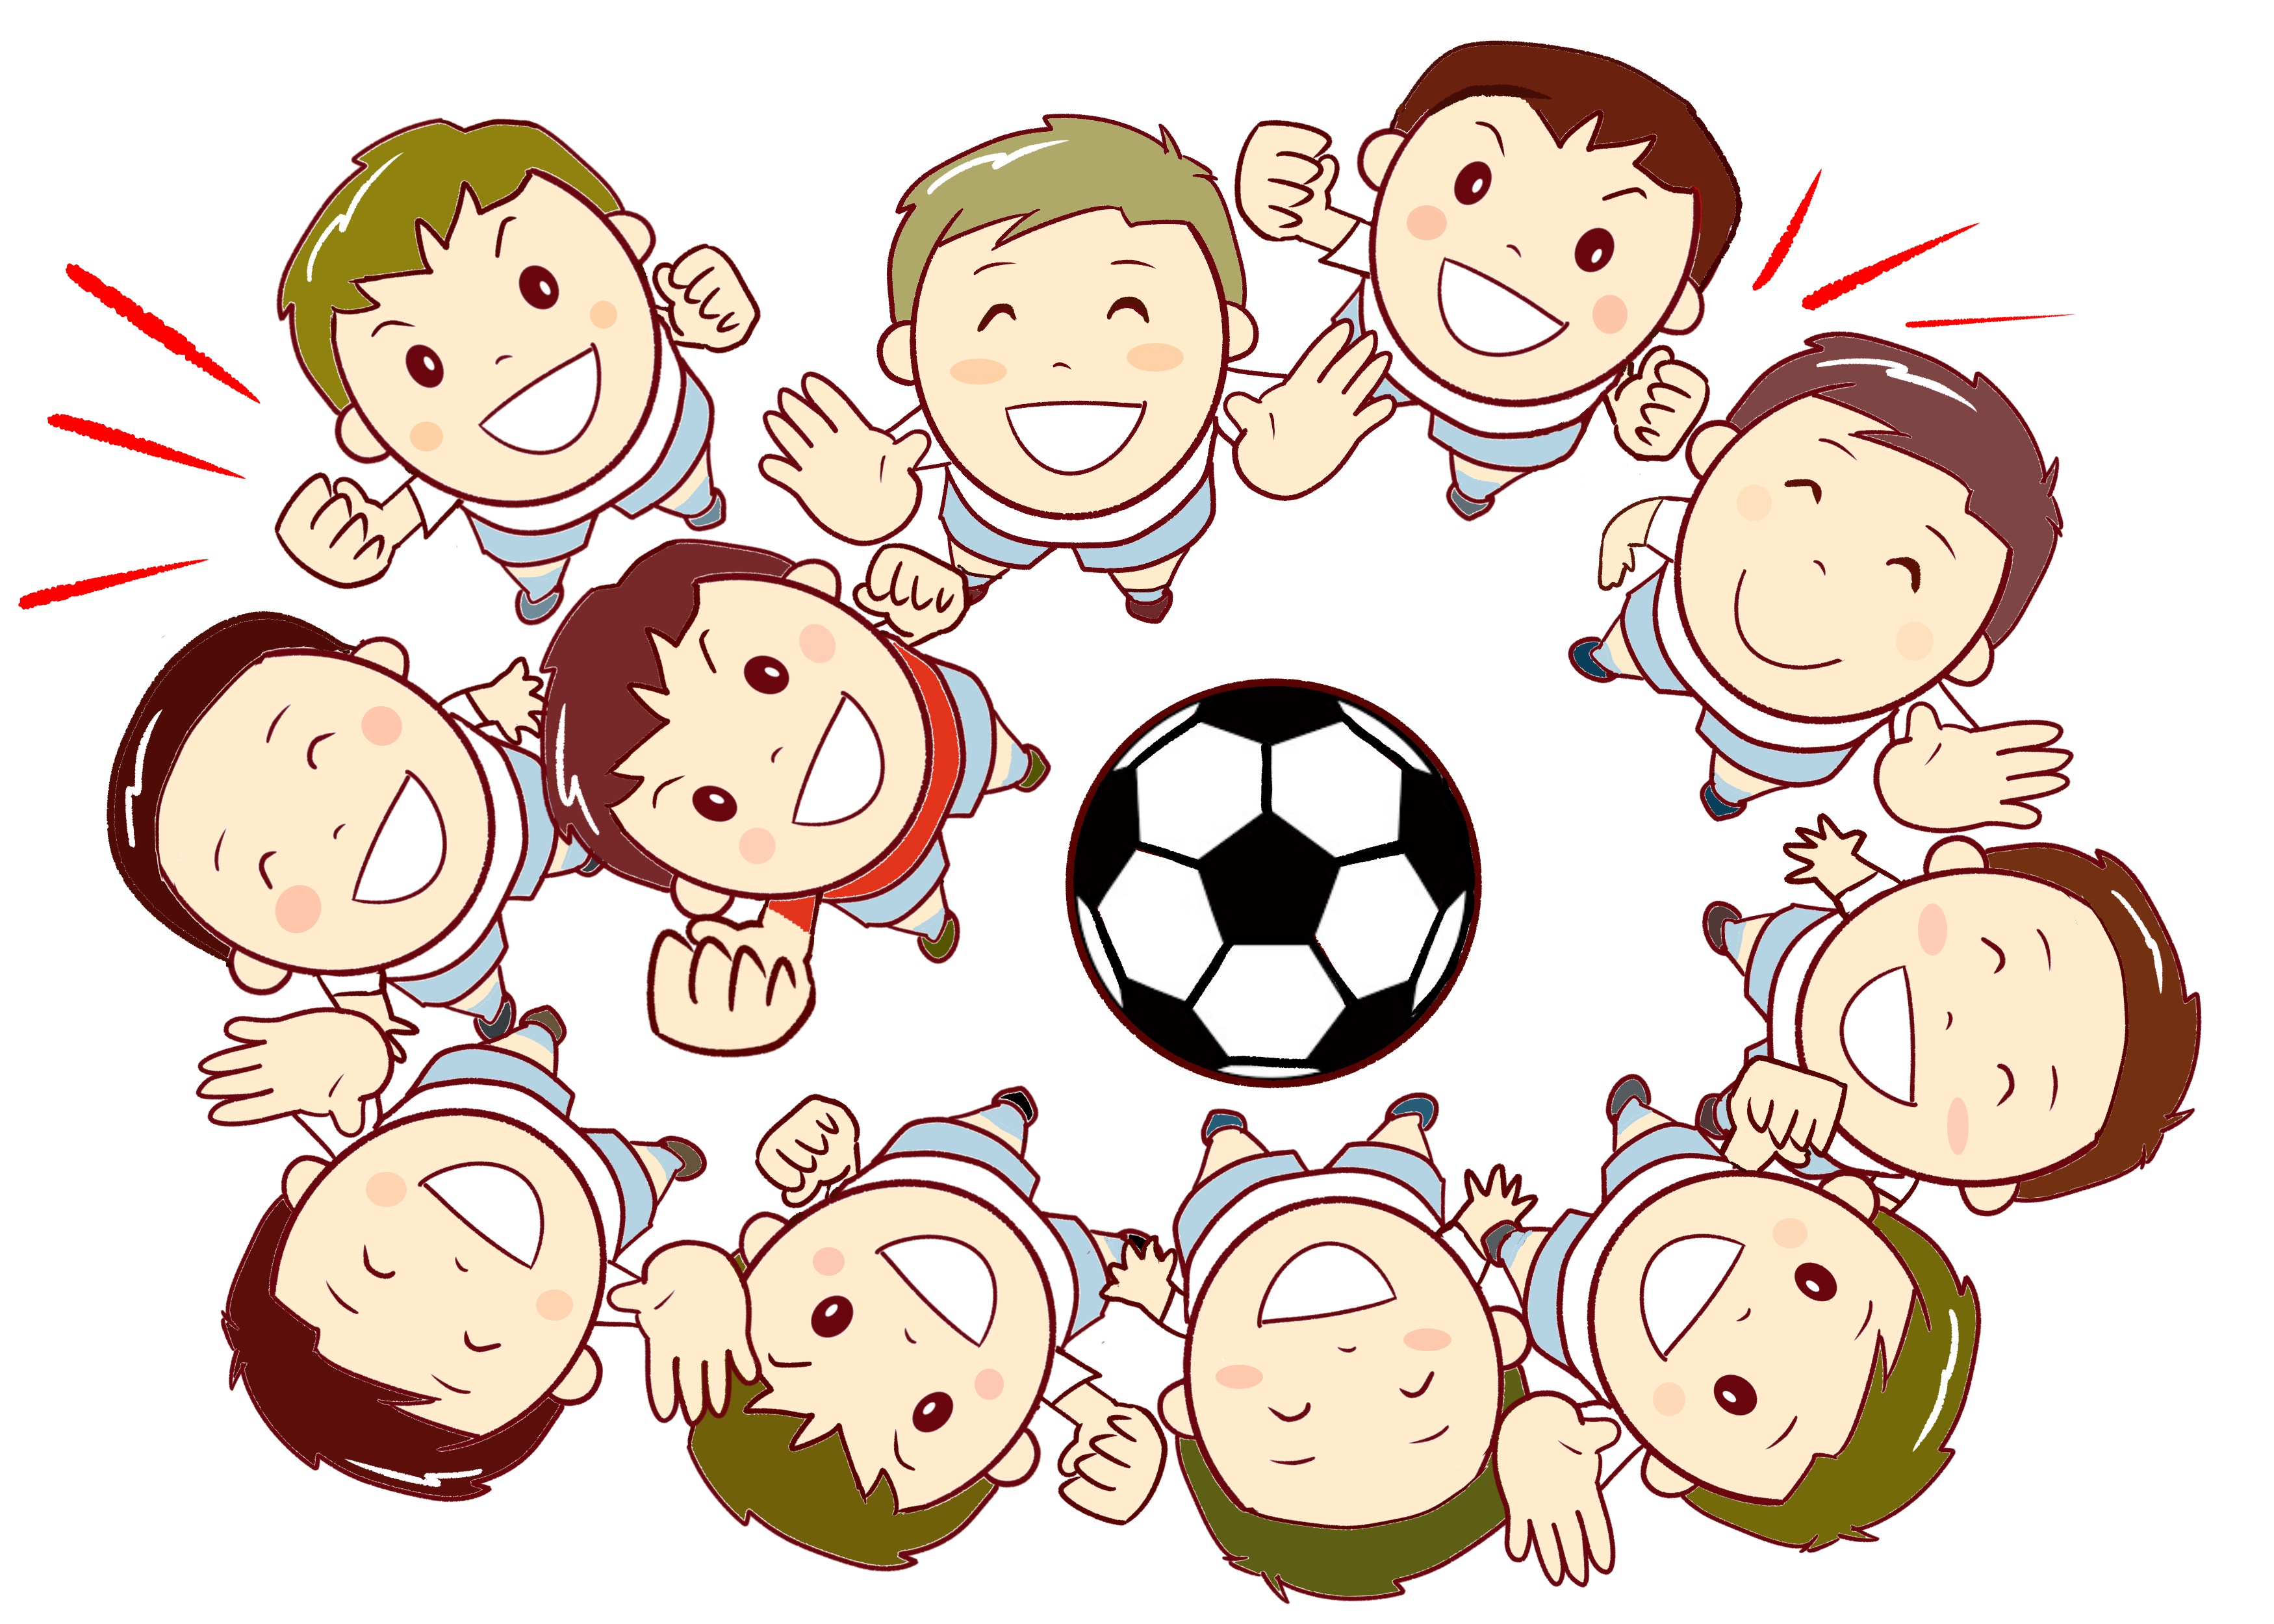 草津市 21 2 23 火 祝 リベルタサッカースクール無料体験会開催 サッカーを始めてみませんか 対象は3歳 小学4年生のキッズたち 滋賀のママがイベント 育児 遊び 学びを発信 シガマンマ ピースマム